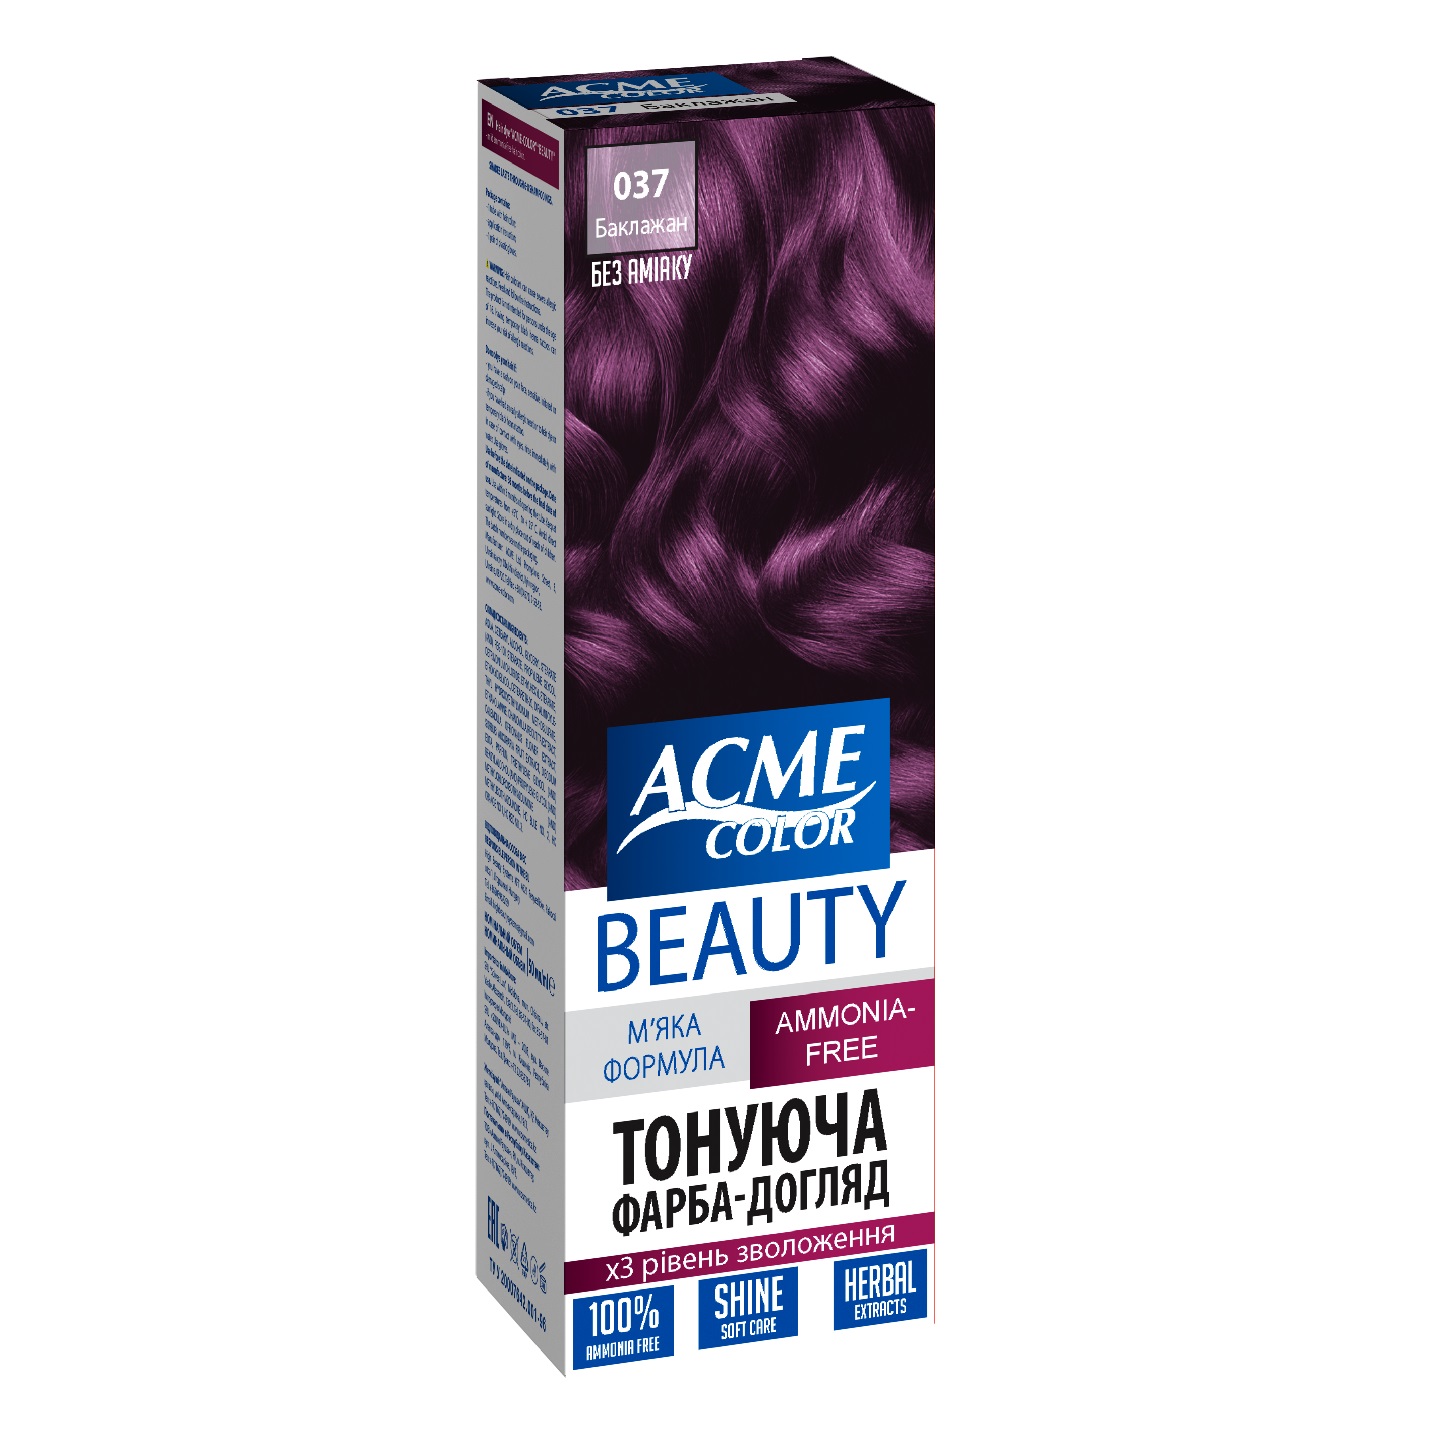 Гель-краска для волос Acme-color Beauty, оттенок 037 (Баклажан), 69 г - фото 1